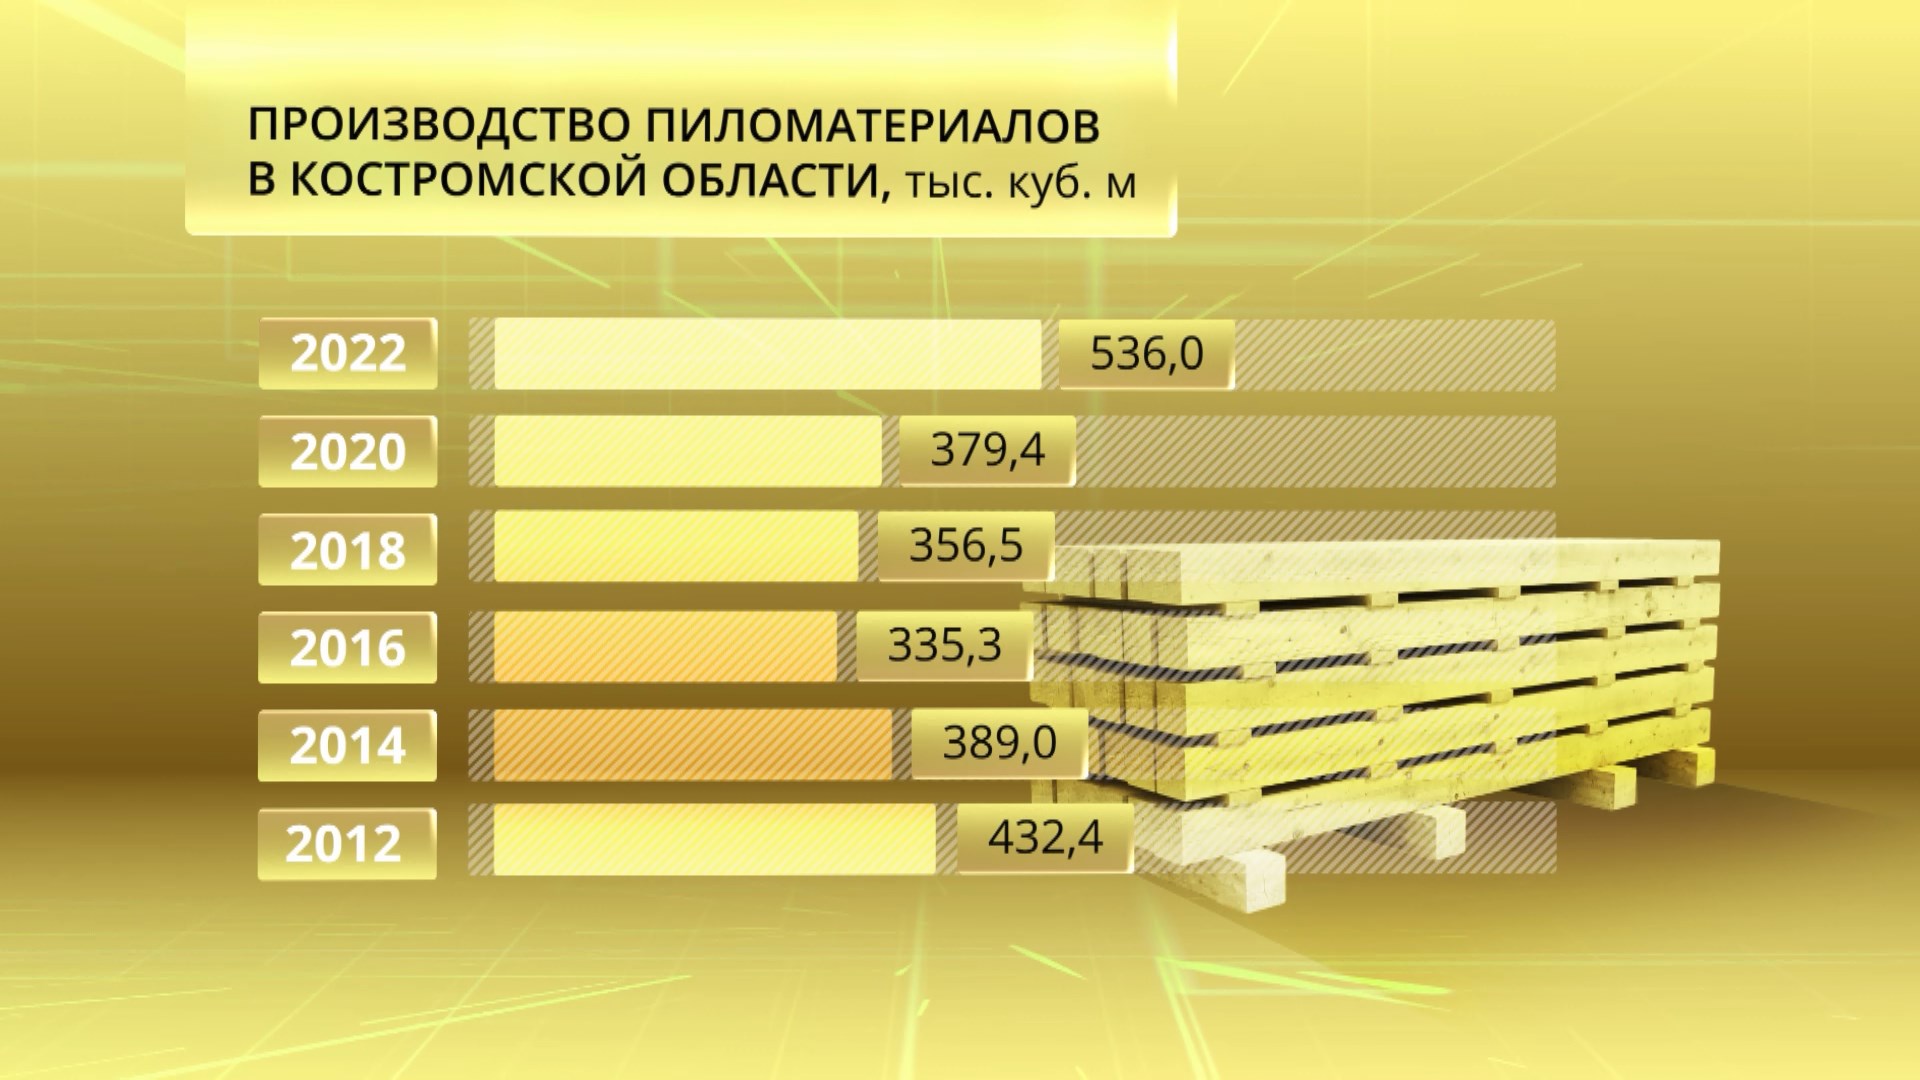 Производство пиломатериалов в Костромской области превысило досанкционный уровень